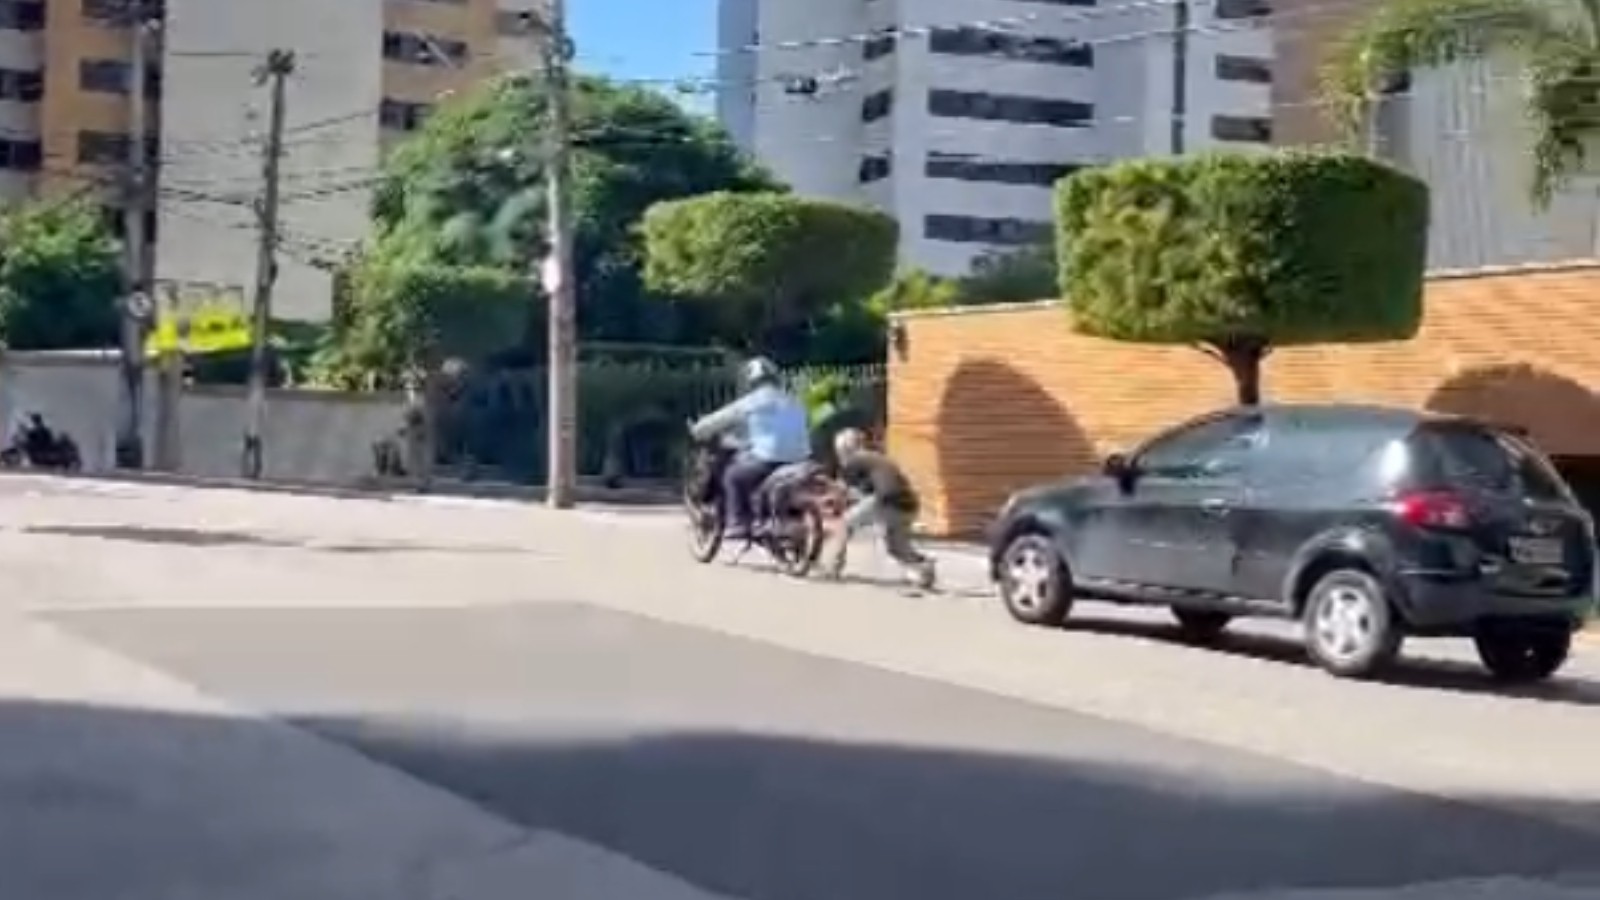 Motociclista joga capacete e quebra vidro de carro em briga no trânsito em Fortaleza; vídeo